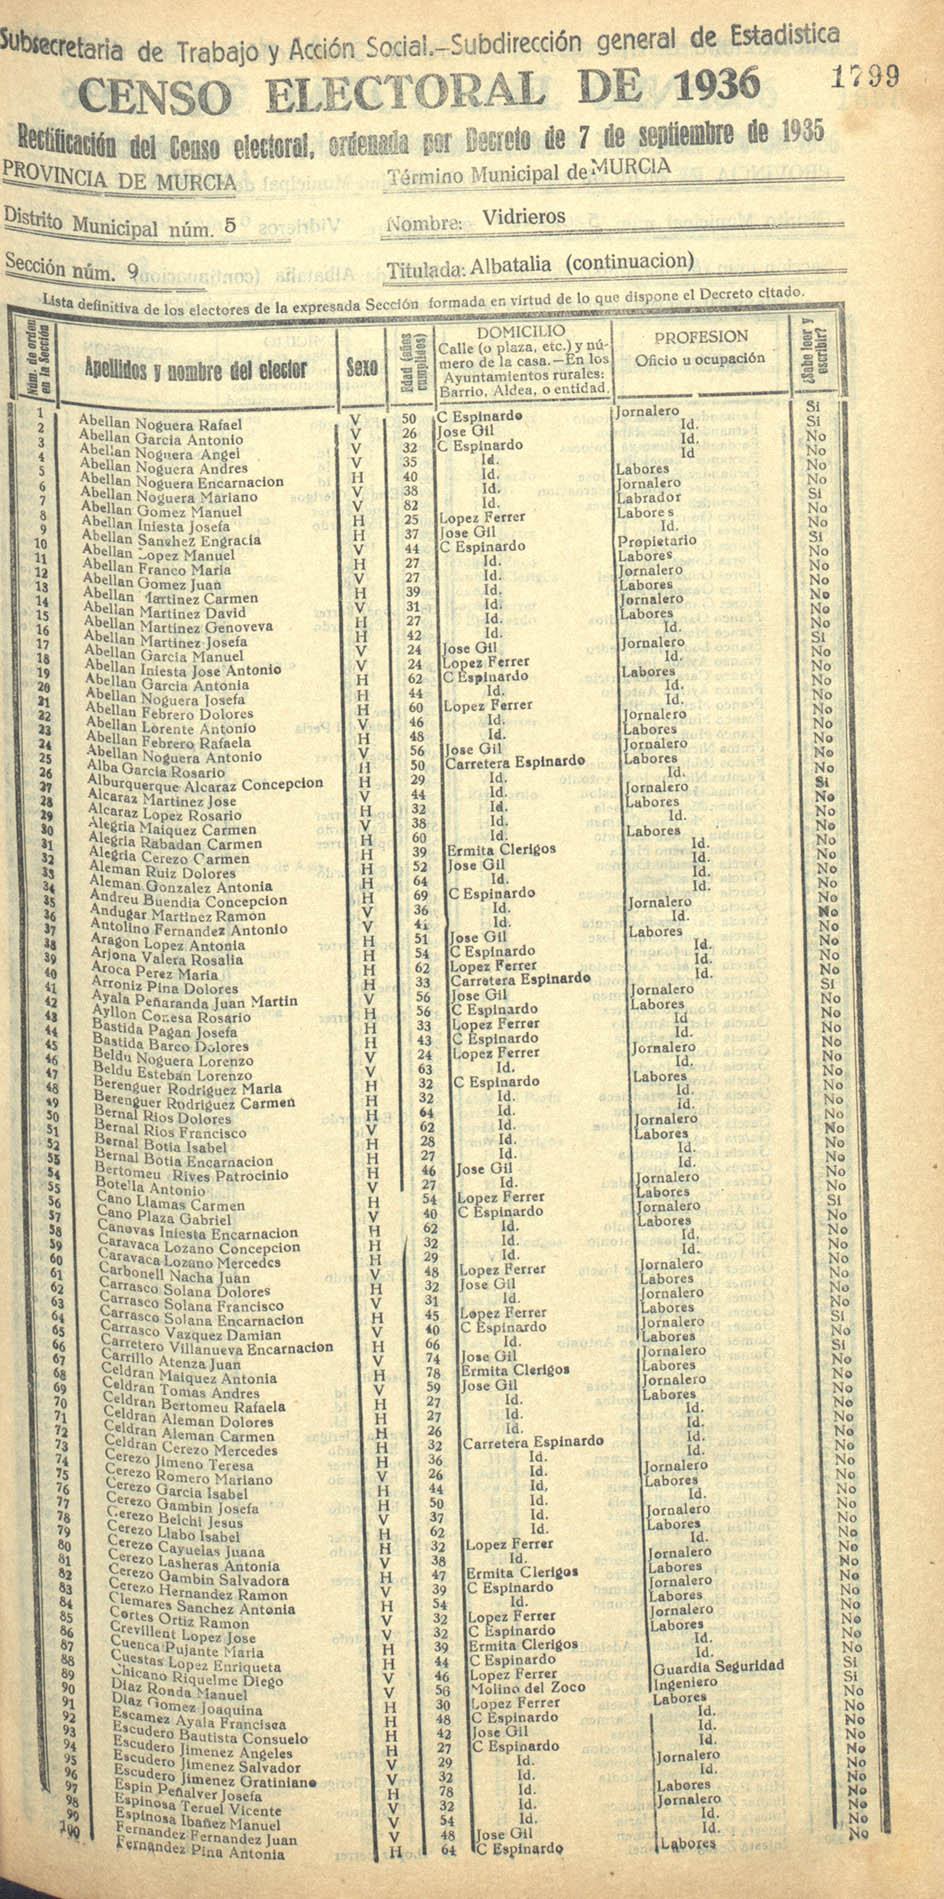 Censo electoral provincial de 1936. Murcia. Distrito 5º, Vidrieros. Sección 9ª, Albatalía (continuación)